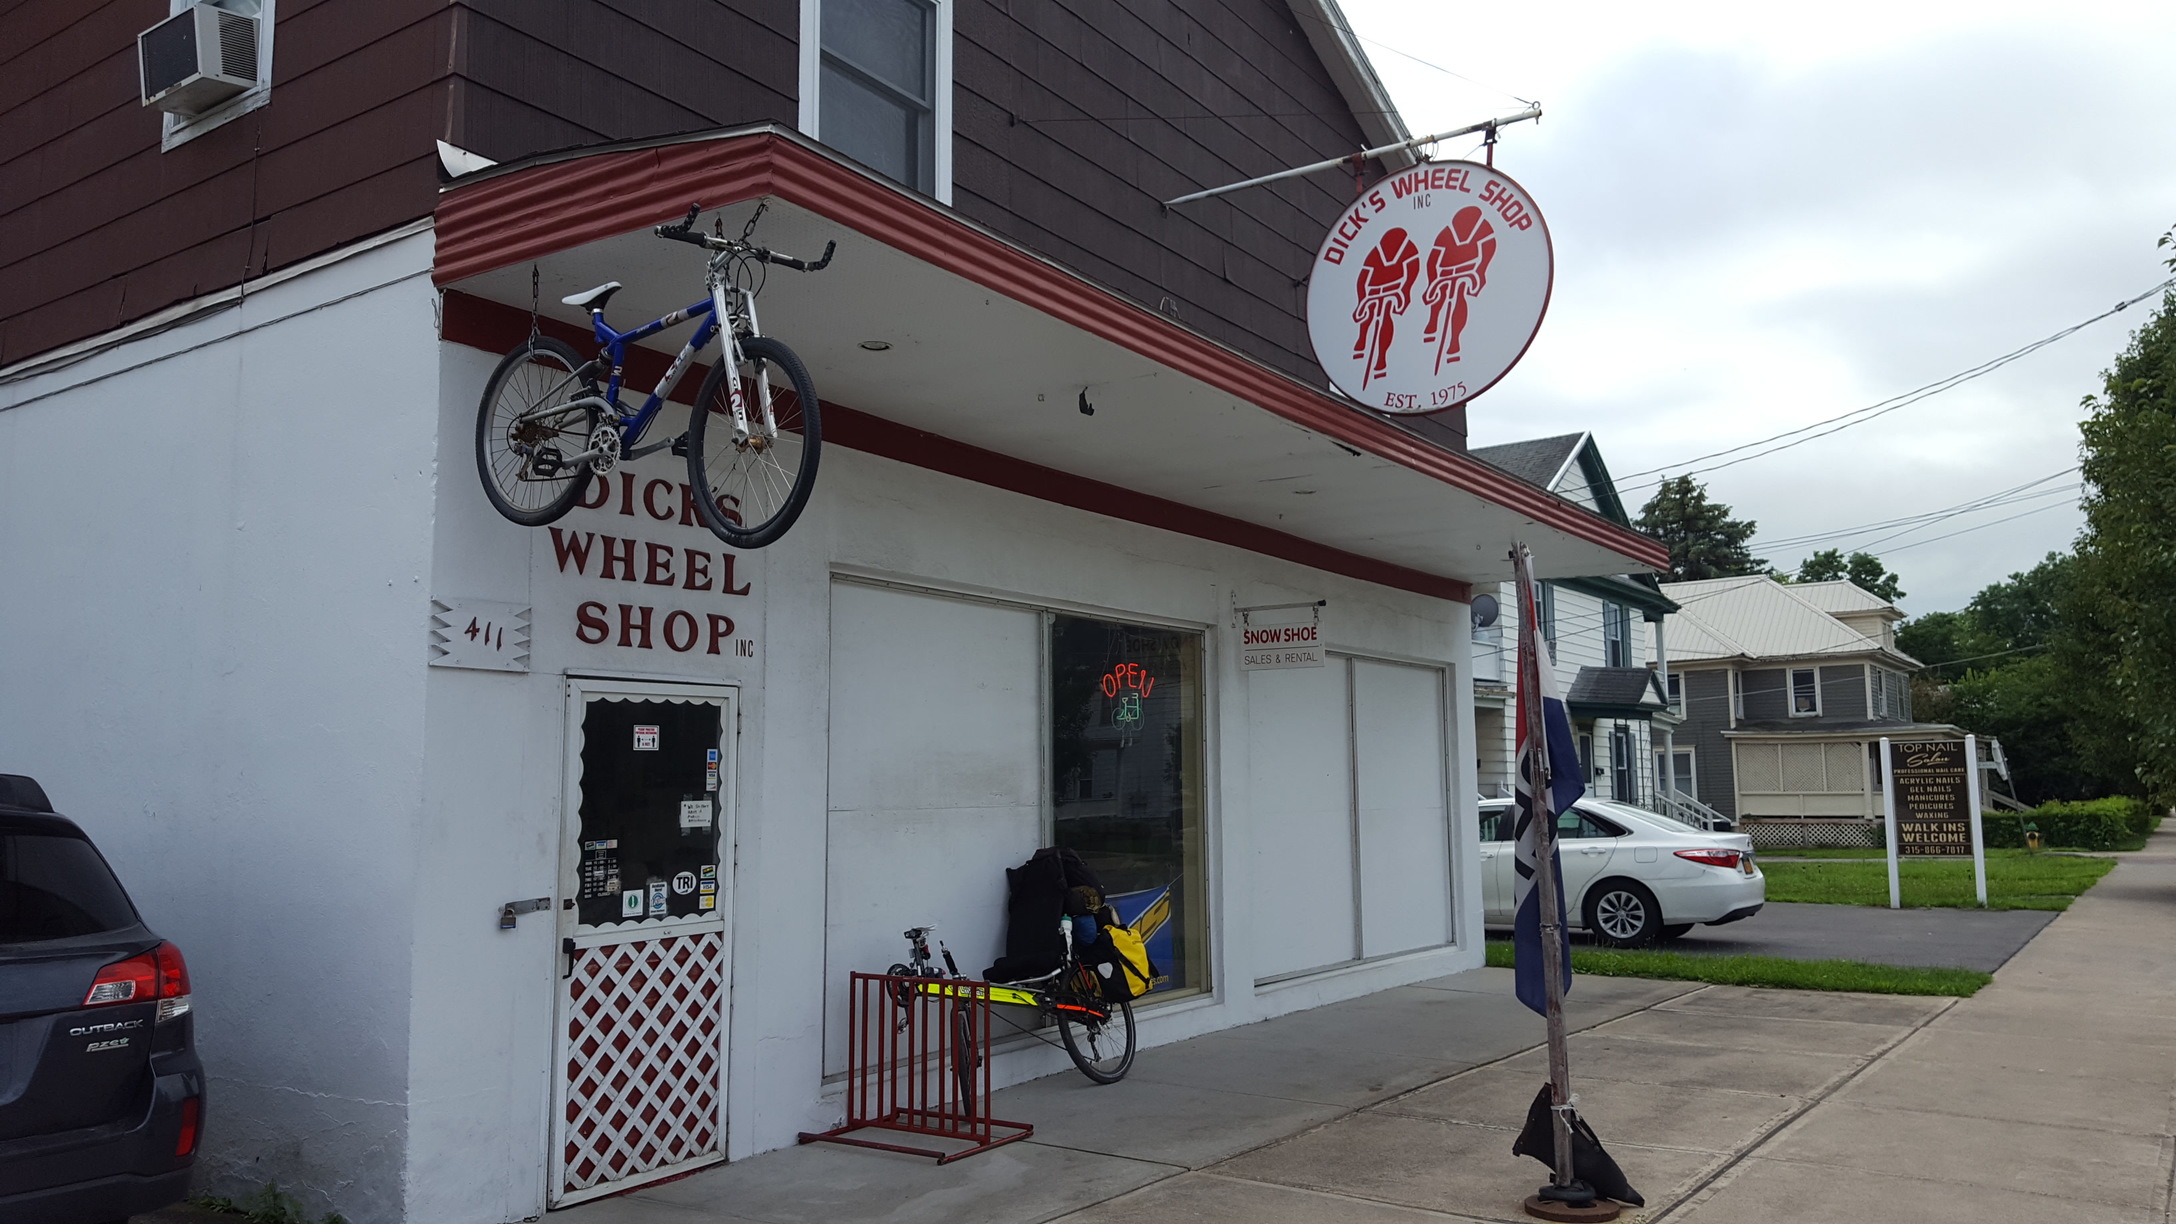 Dick's Wheel Shop, Herkimer, NY